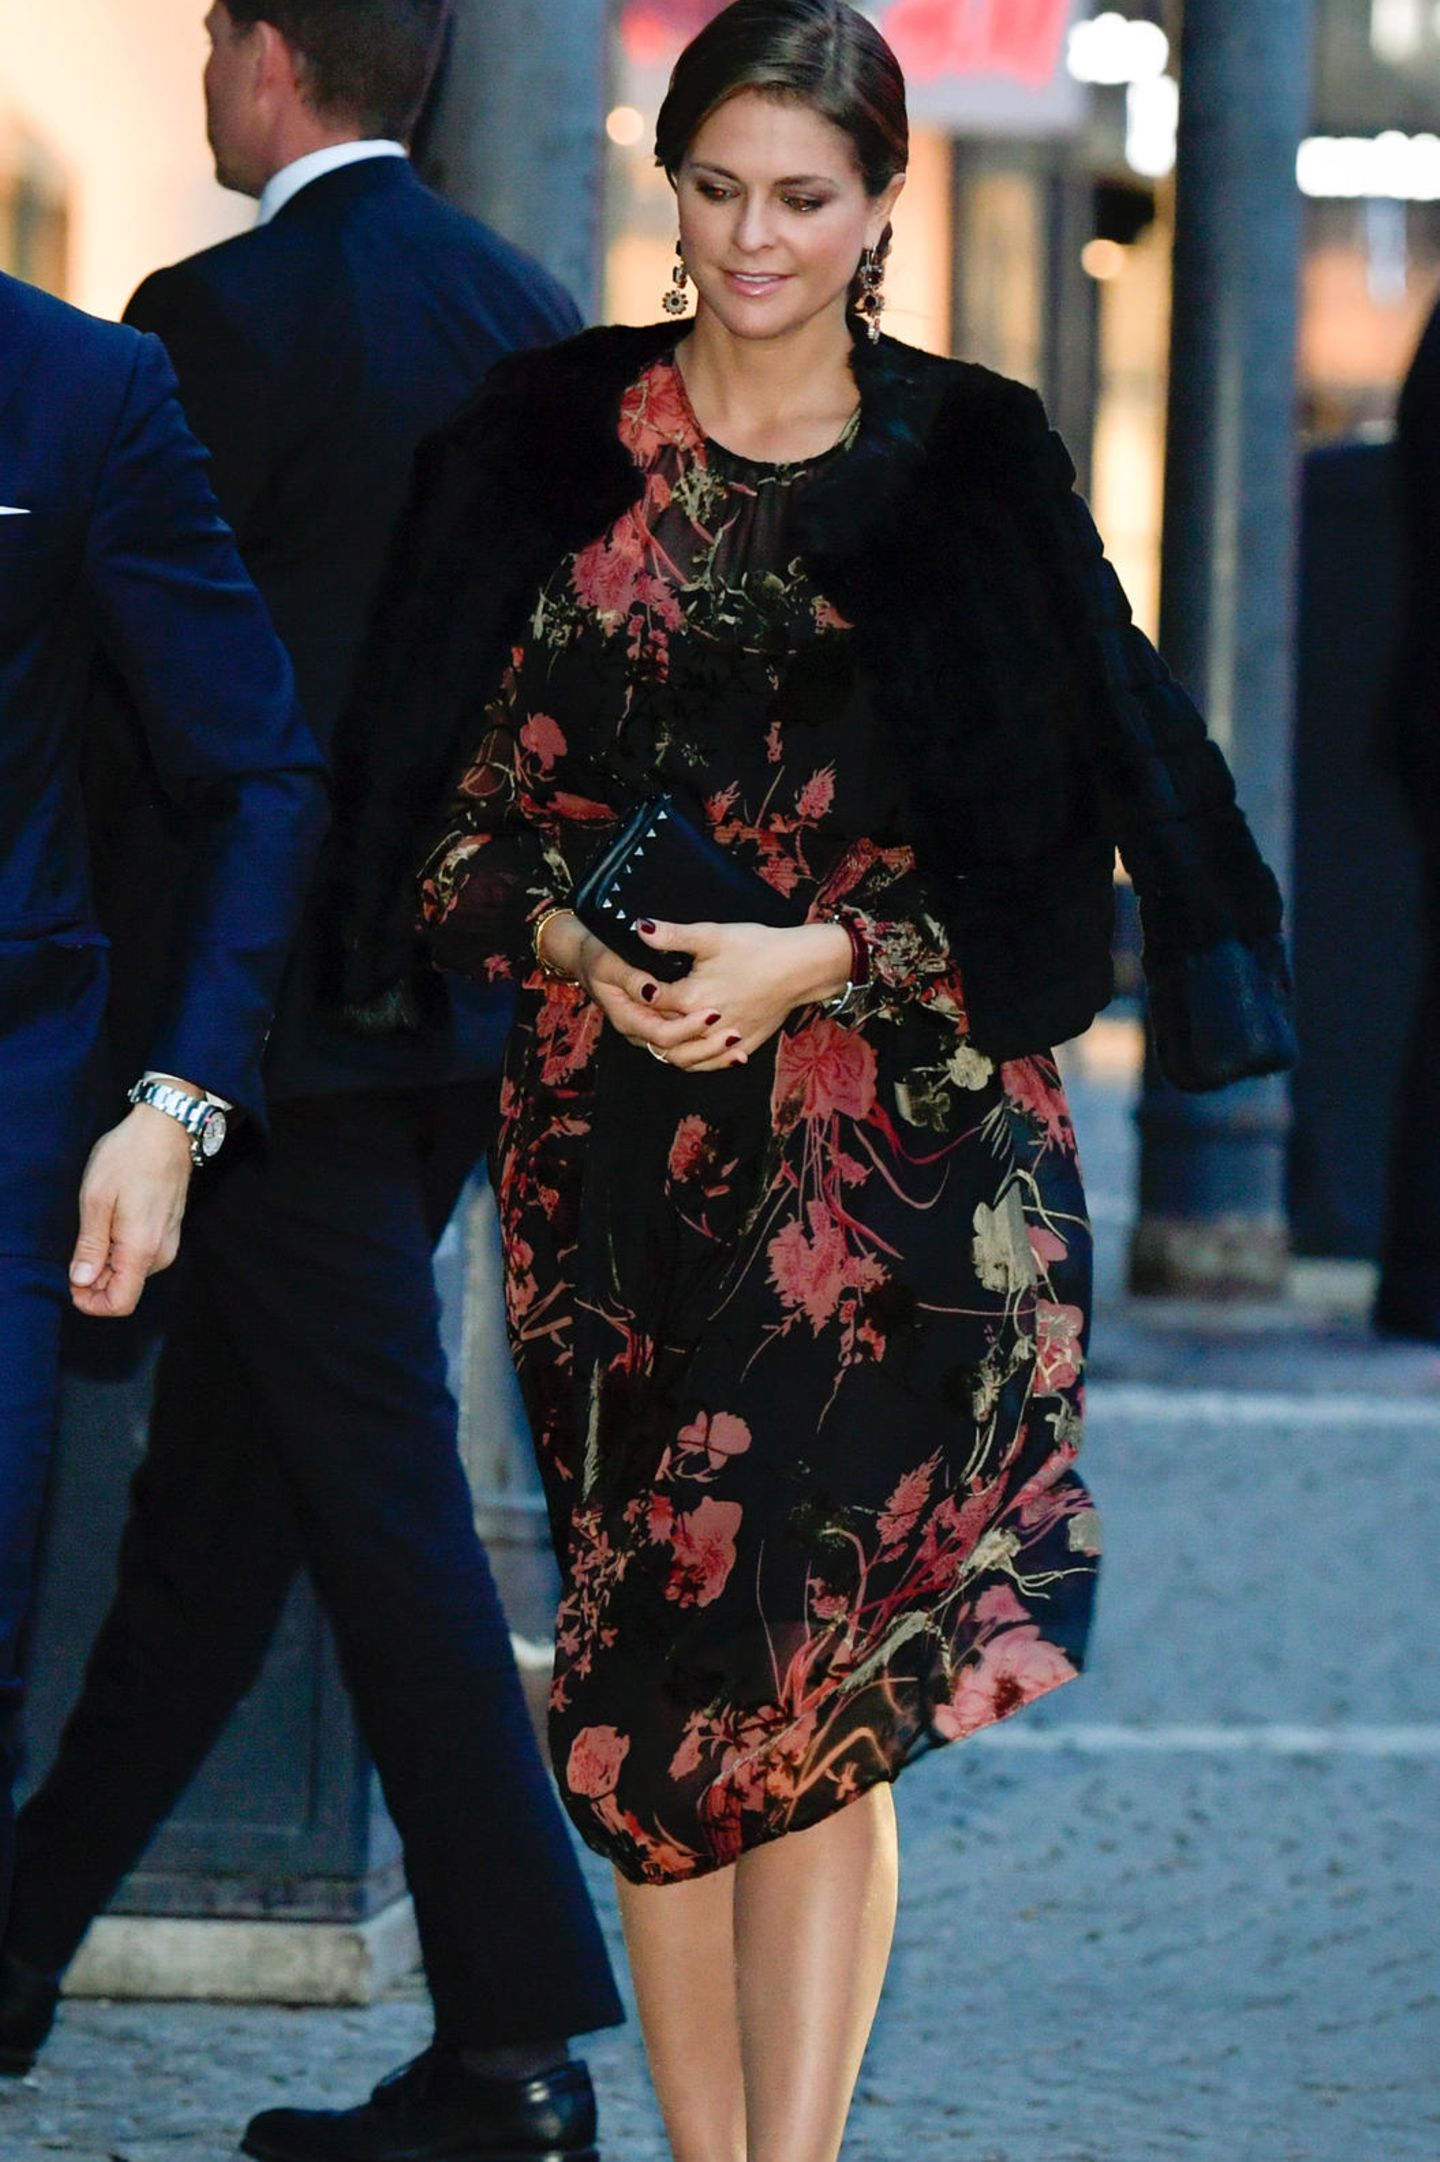 Zu einem Konzert anlässlich der Eröffnung des schwedischen Parlaments trägt die schwangere Prinzessin Madeleine ein schwarzes Kleid mit floralem Print. Madeleine, die sonst für ihr Faible für luxuriöse Outfits bekannt ist, hat mit diesem Look ein echtes Schnäppchen gemacht. Das Kleid stammt vom spanischen Label ZARA und kostet knapp 60 Euro. 